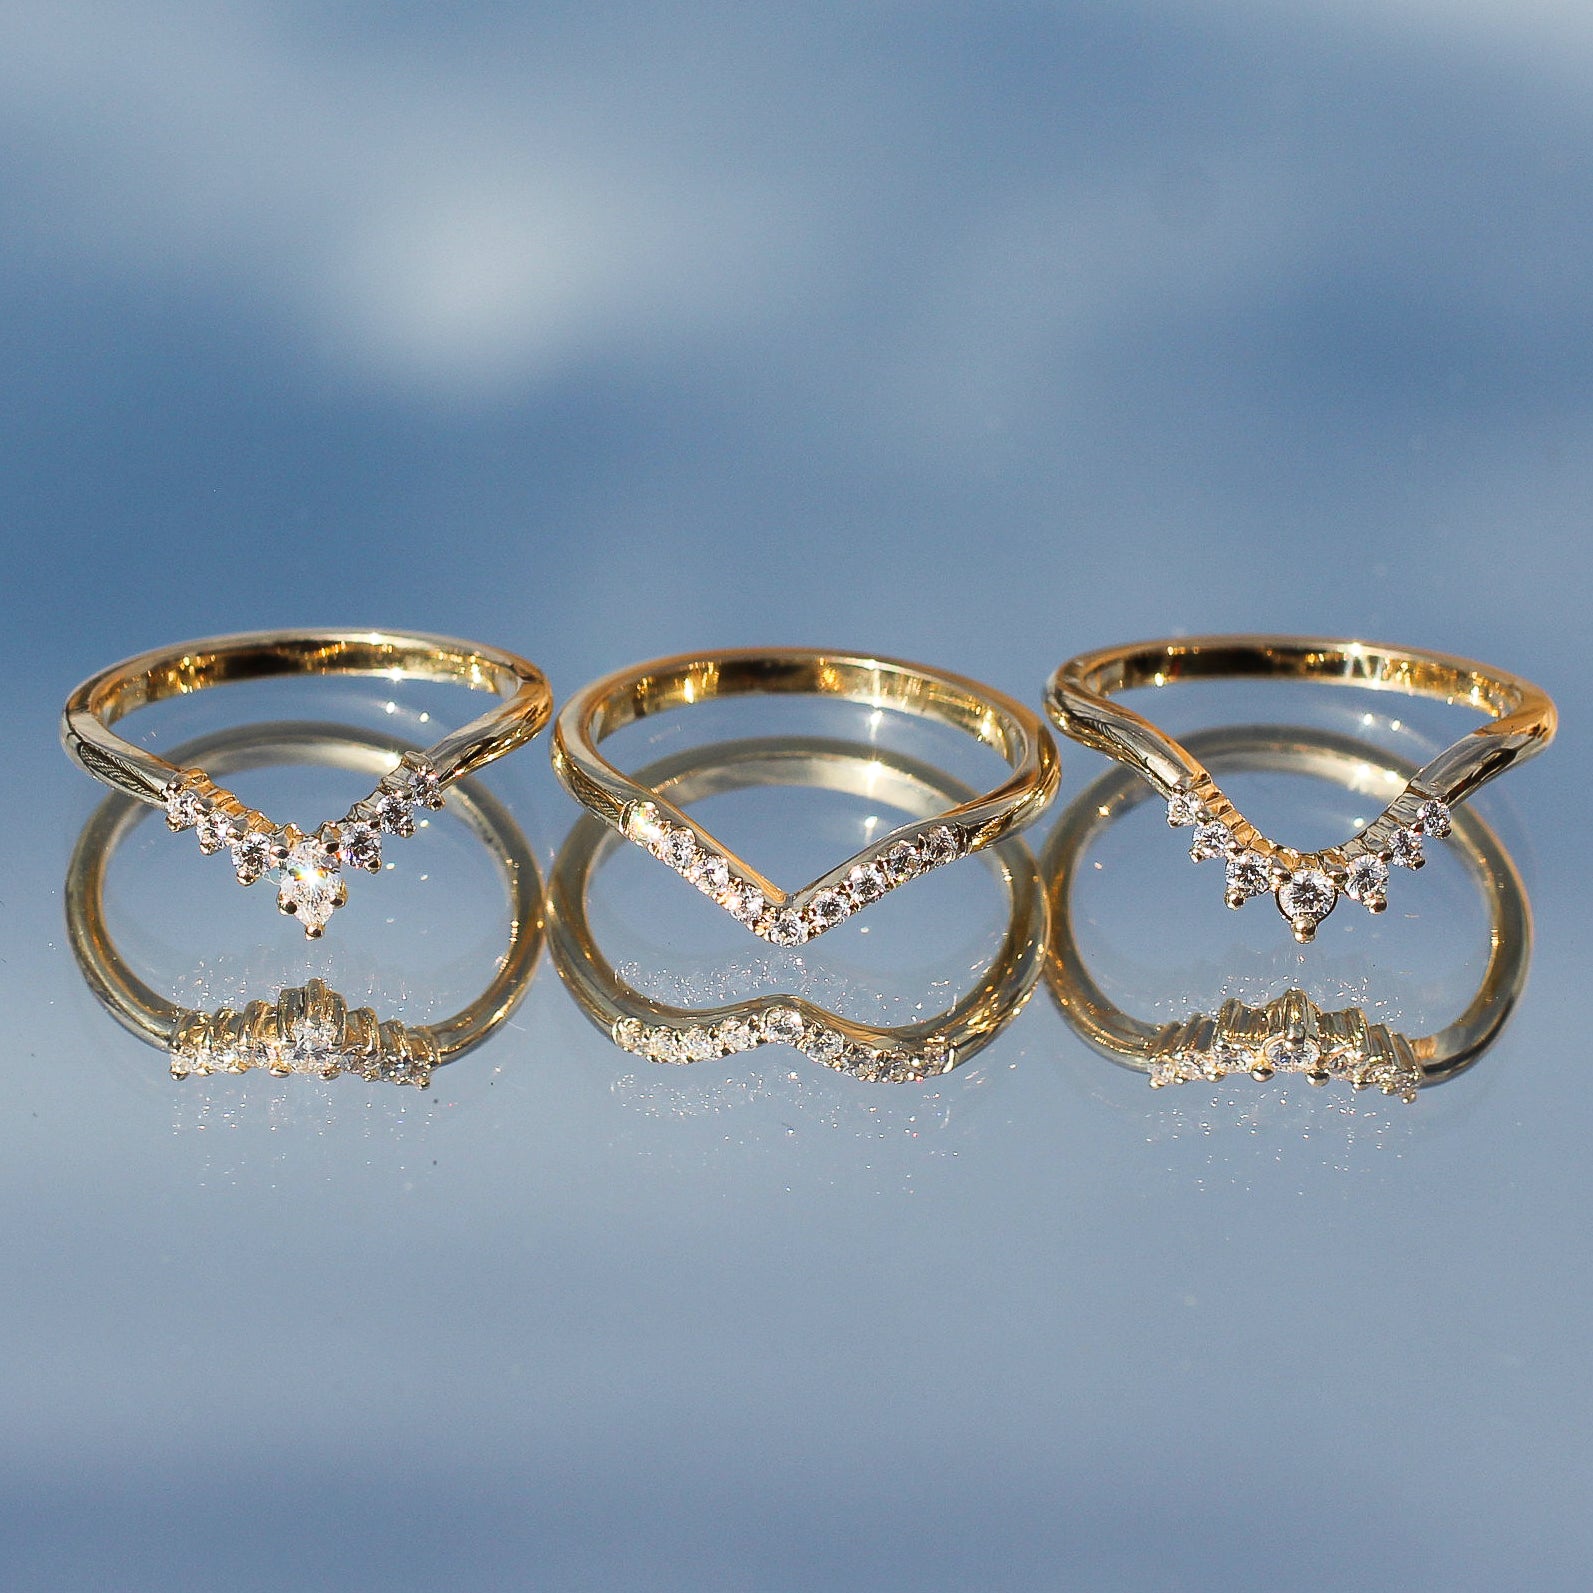 Diamond crown rings